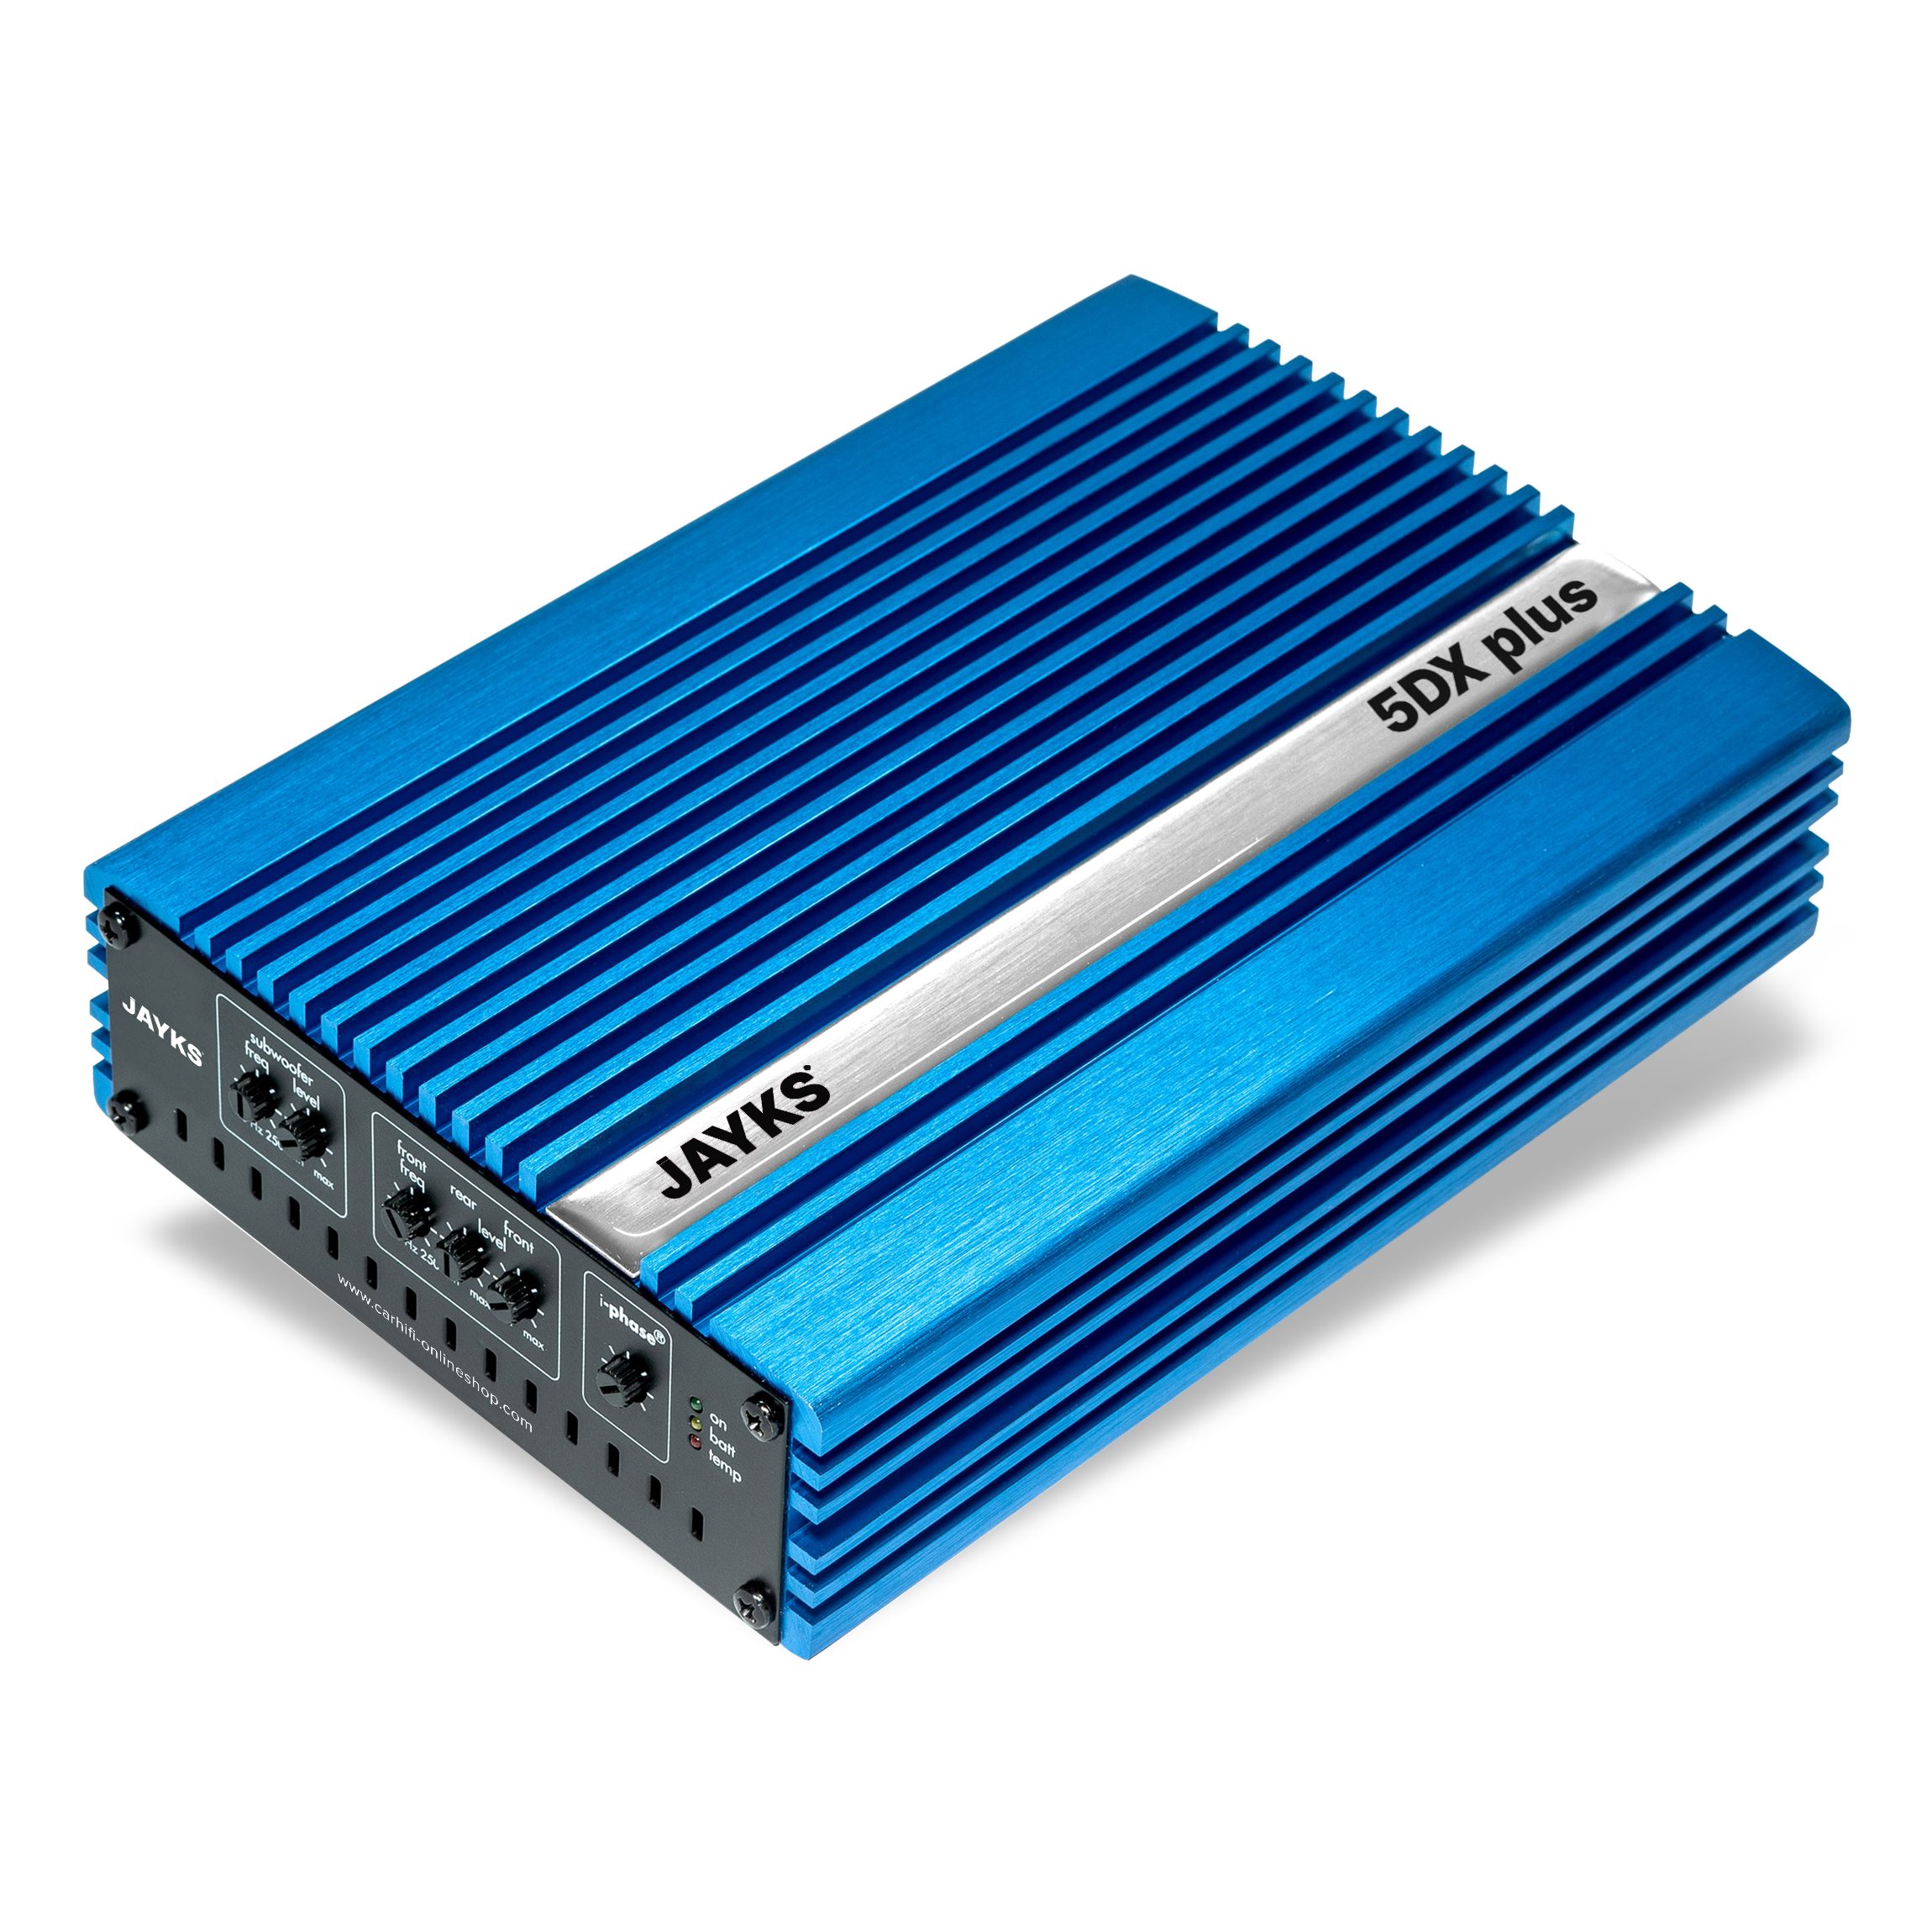 JAYKS 5DXplus Audioverstärker (Anzahl Kanäle: 5, 240,00 W, iPhase - Phasenanpassung, 27 Hz / 12dB Subsonic-Filter) blau